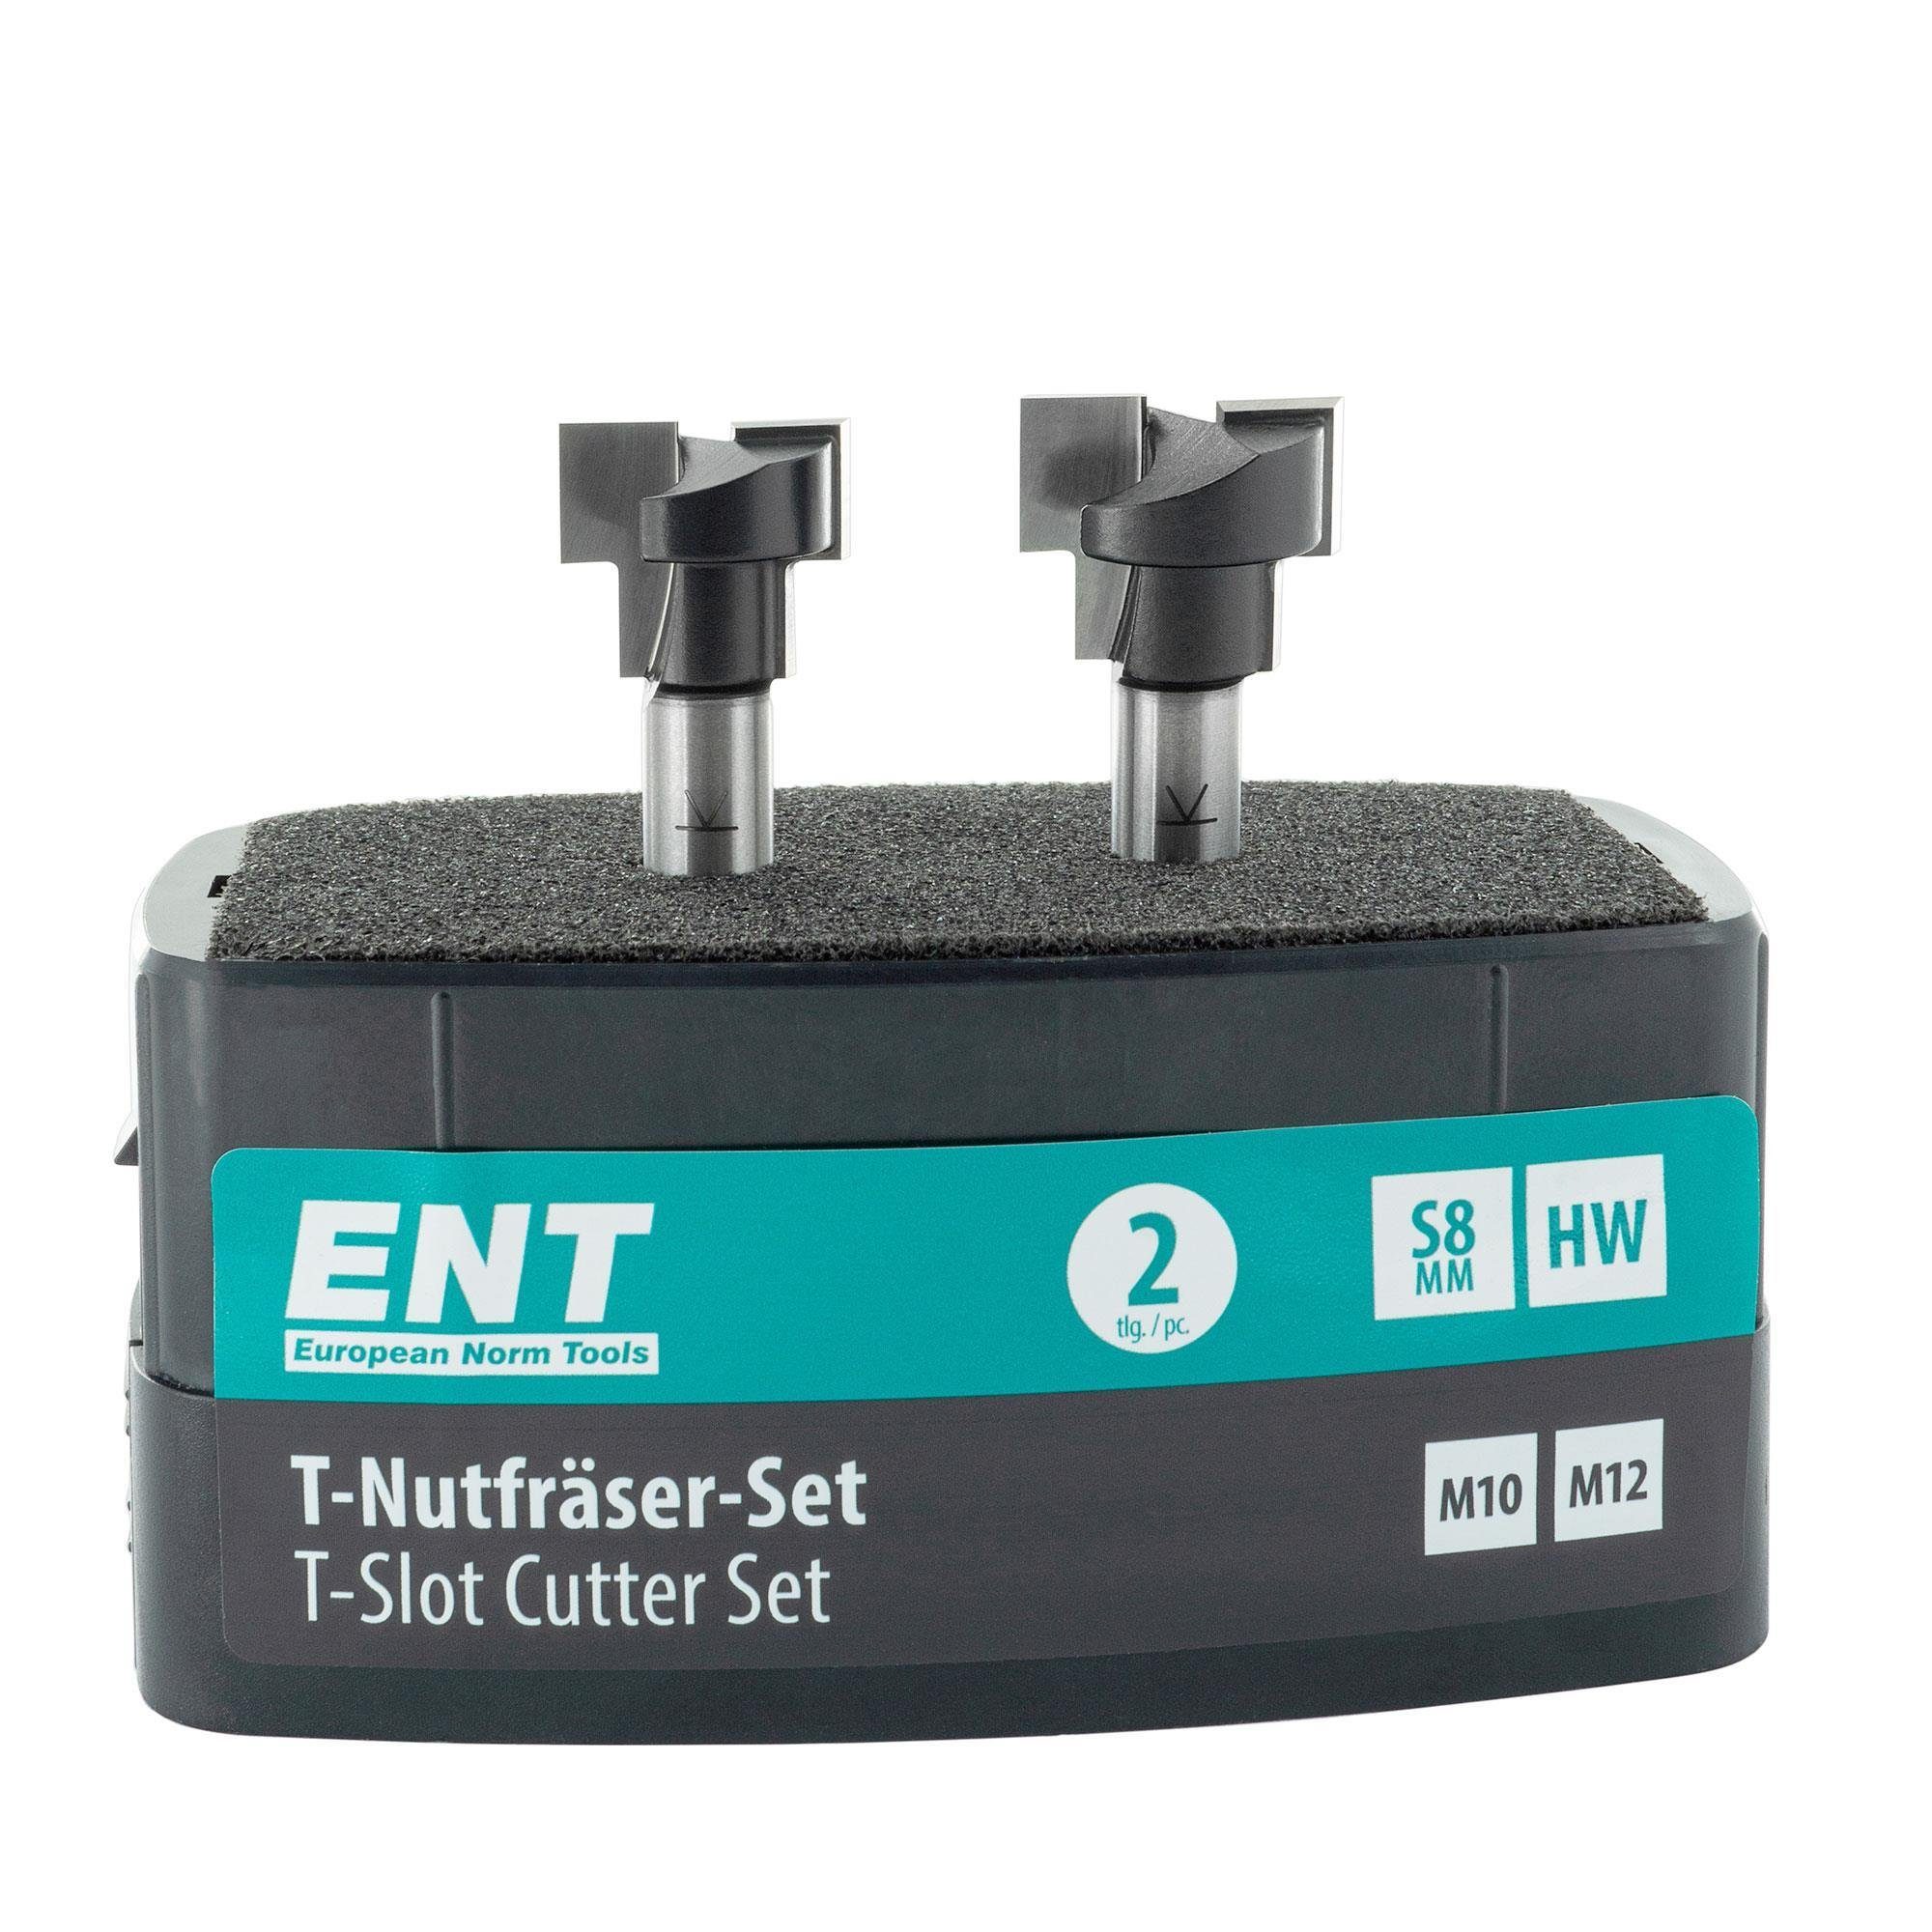 ENT European Norm Tools T-Nutfräser 09047 2-tlg. T-Nutfräser-Set, für M10 und M12 Sechskantschrauben - Schaft Ø 8 mm, Hartmetall